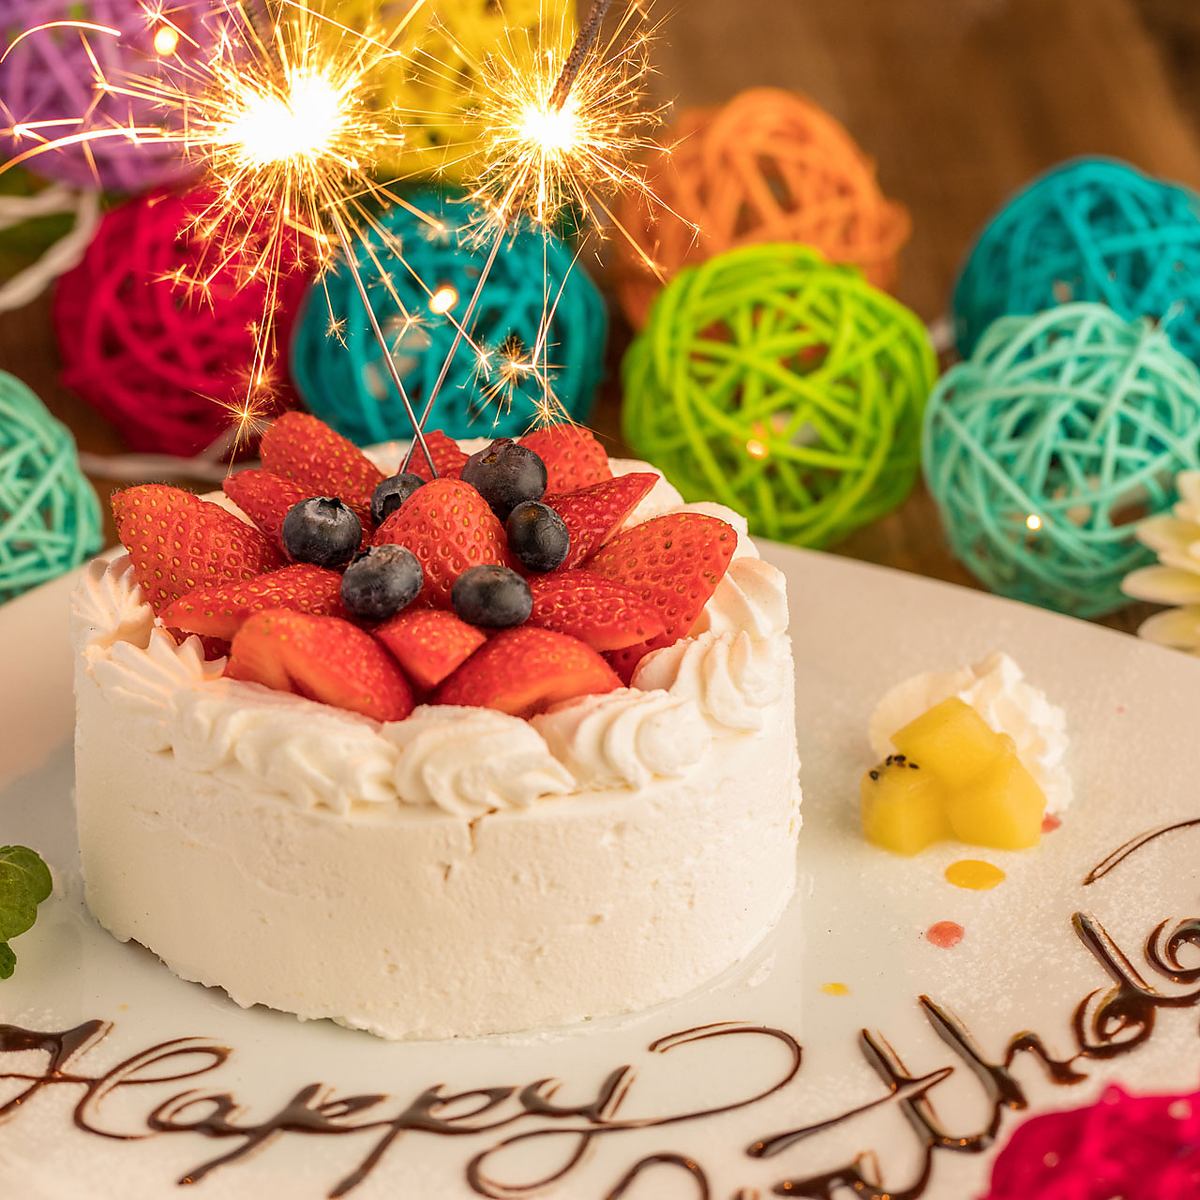 在生日或周年纪念日用您名字的特殊甜点盘庆祝♪